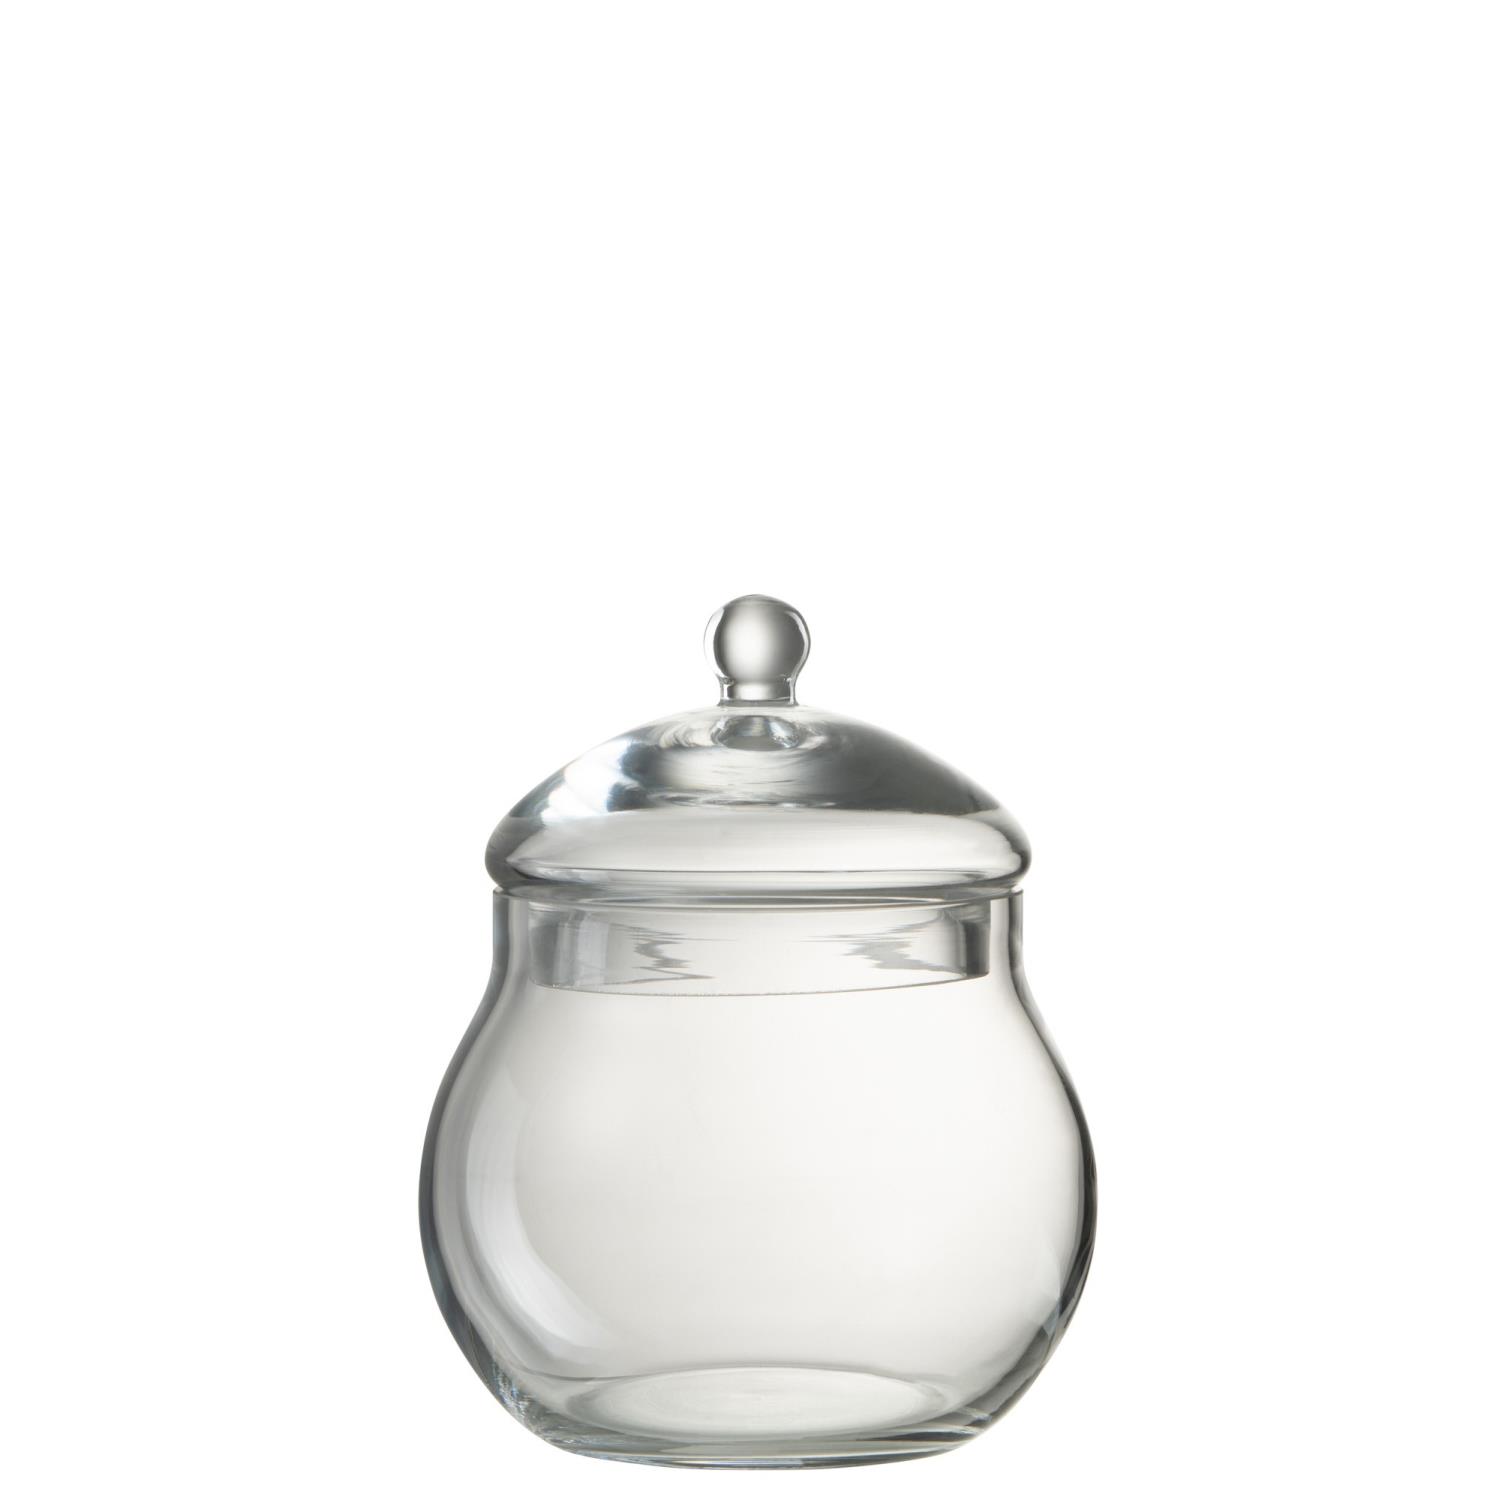 Storage Jar With Lid Glass 15x15xh19cm 28849